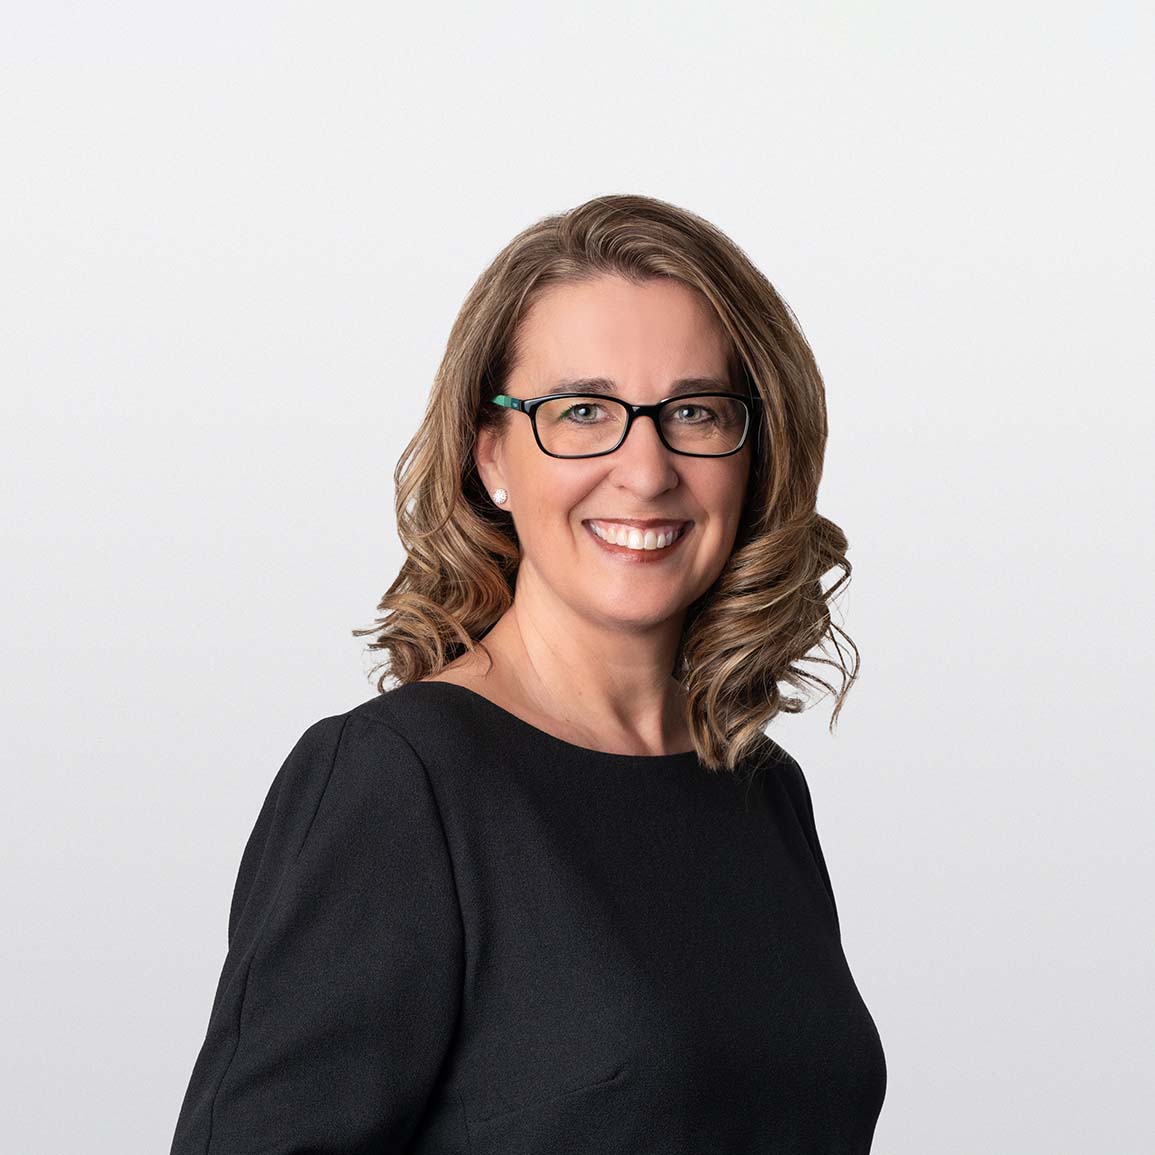 image of Tania Neufeld financial advisor on white background